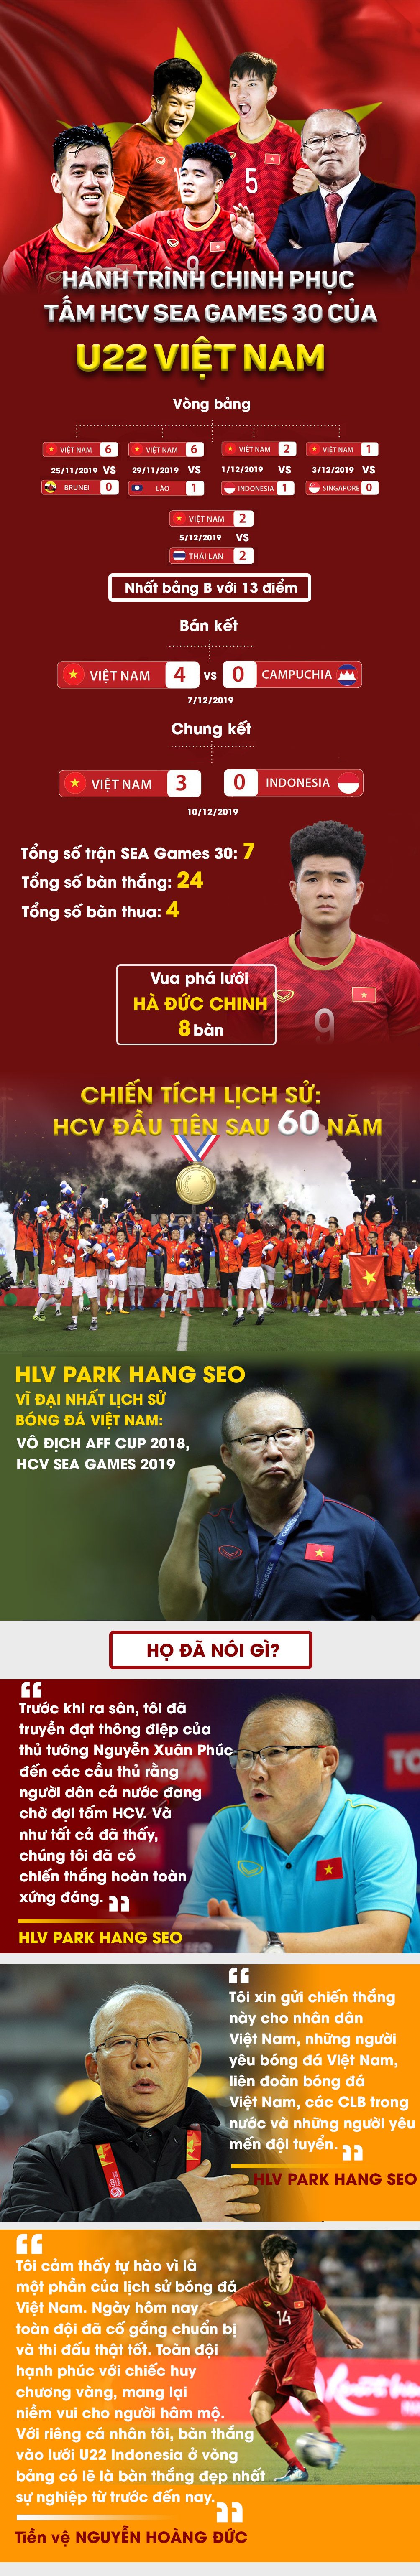 U22 Việt Nam kì tích HCV SEA Games: Hành trình của nhà vô địch tuyệt đối - 1